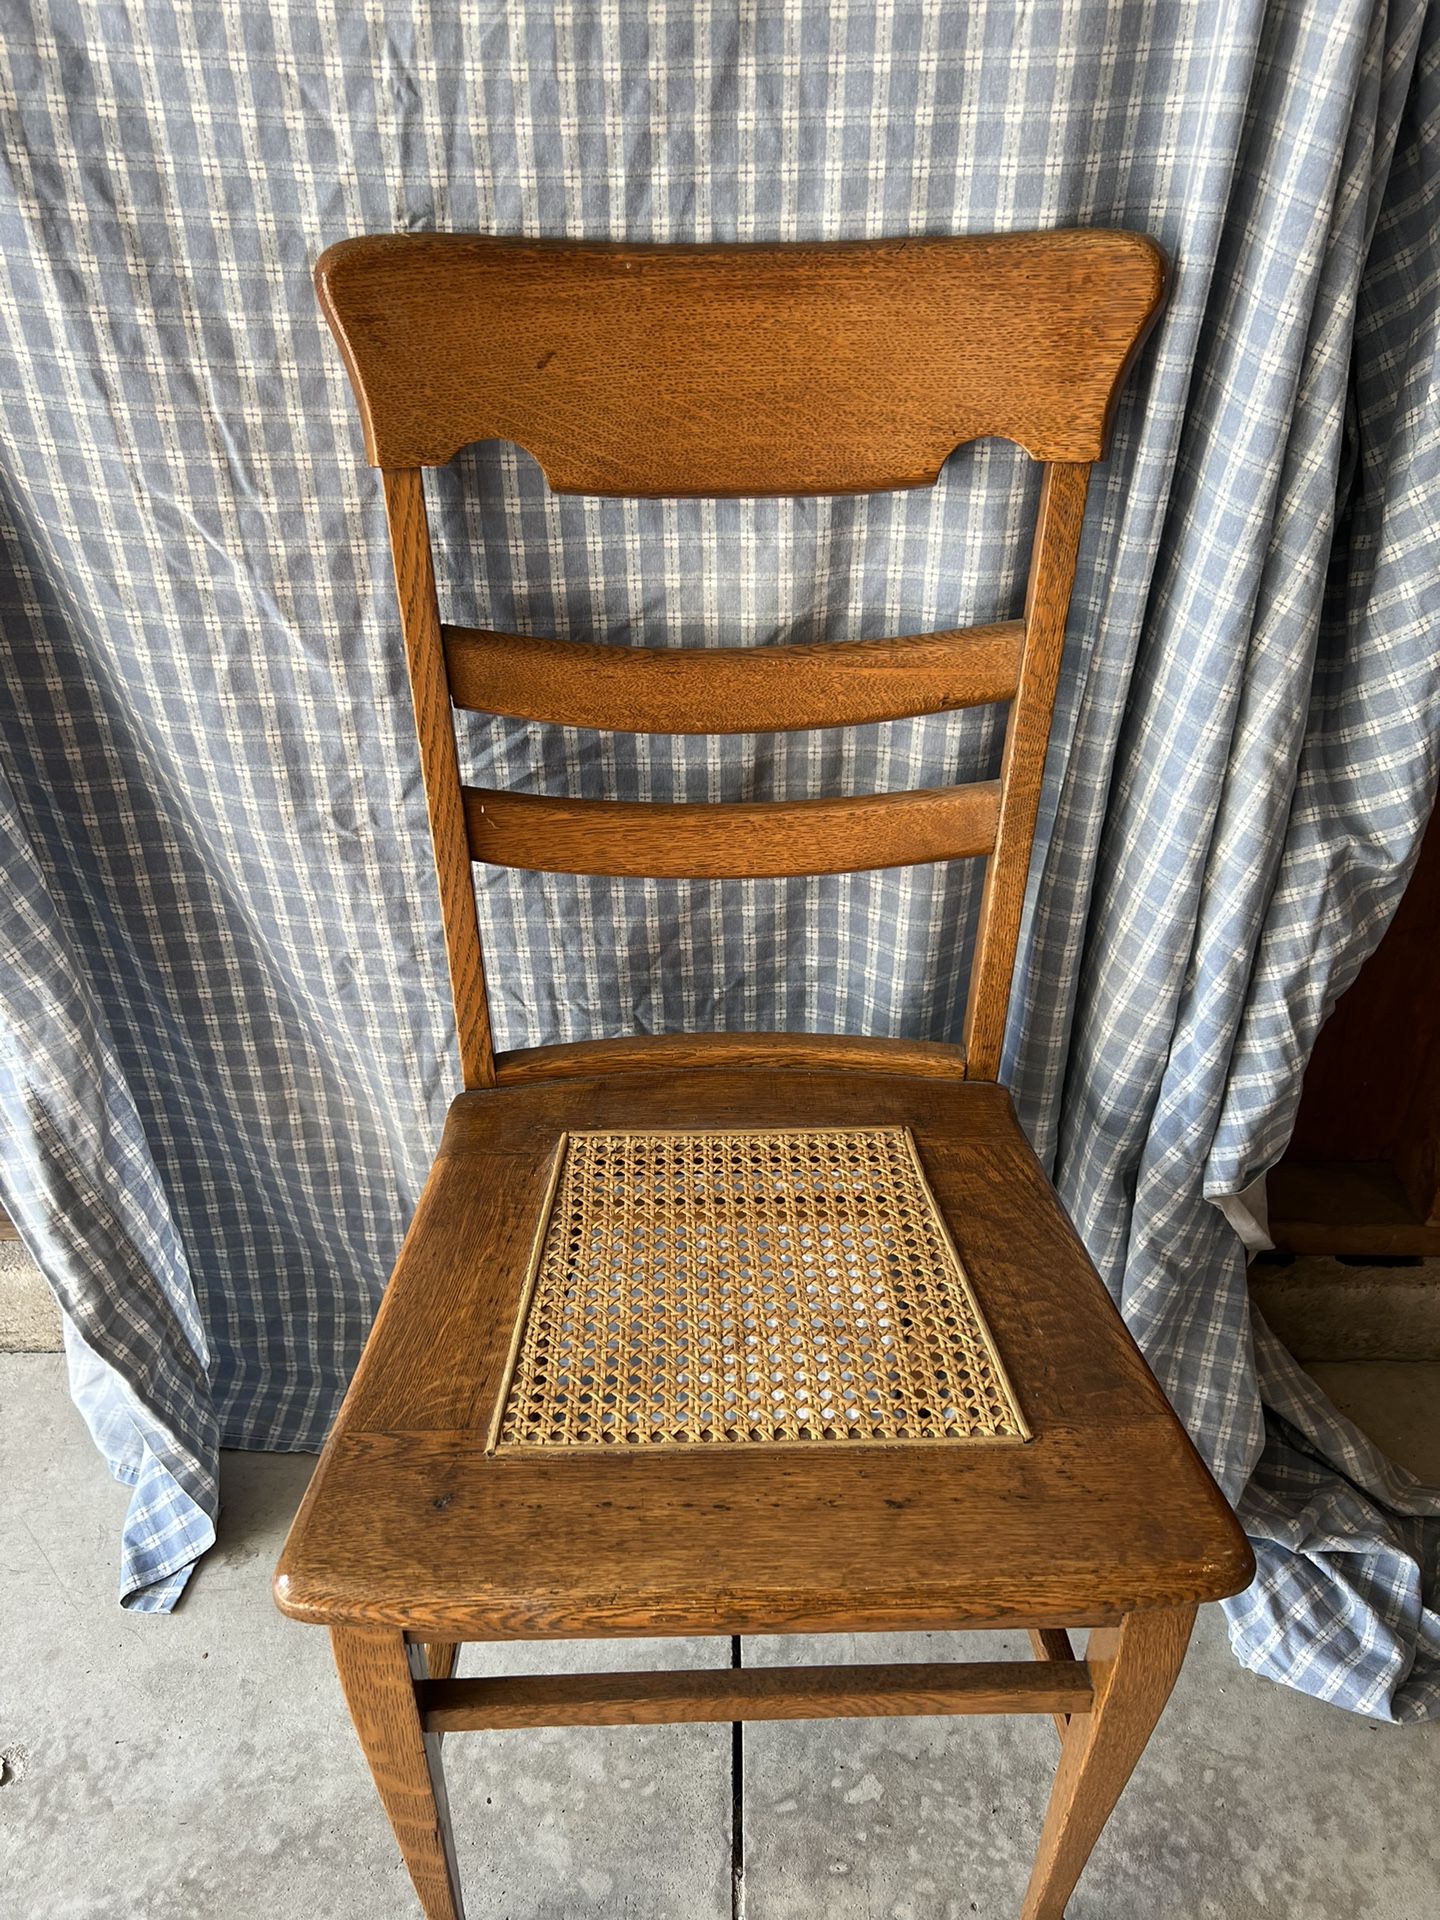 Antique, Oak, Wicker Chair